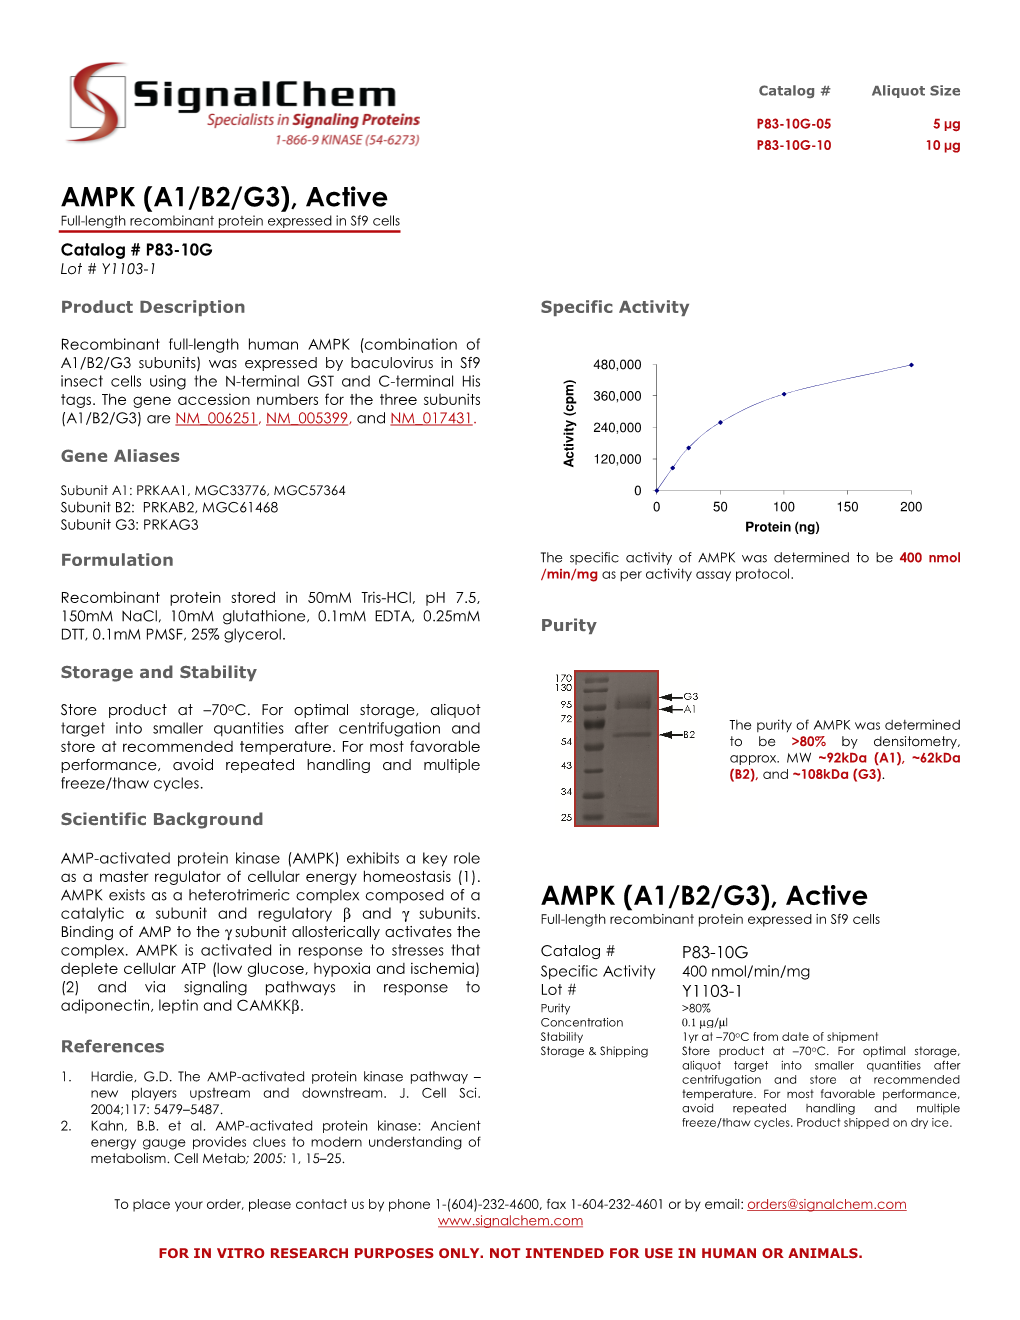 Active AMPK (A1/B2/G3)